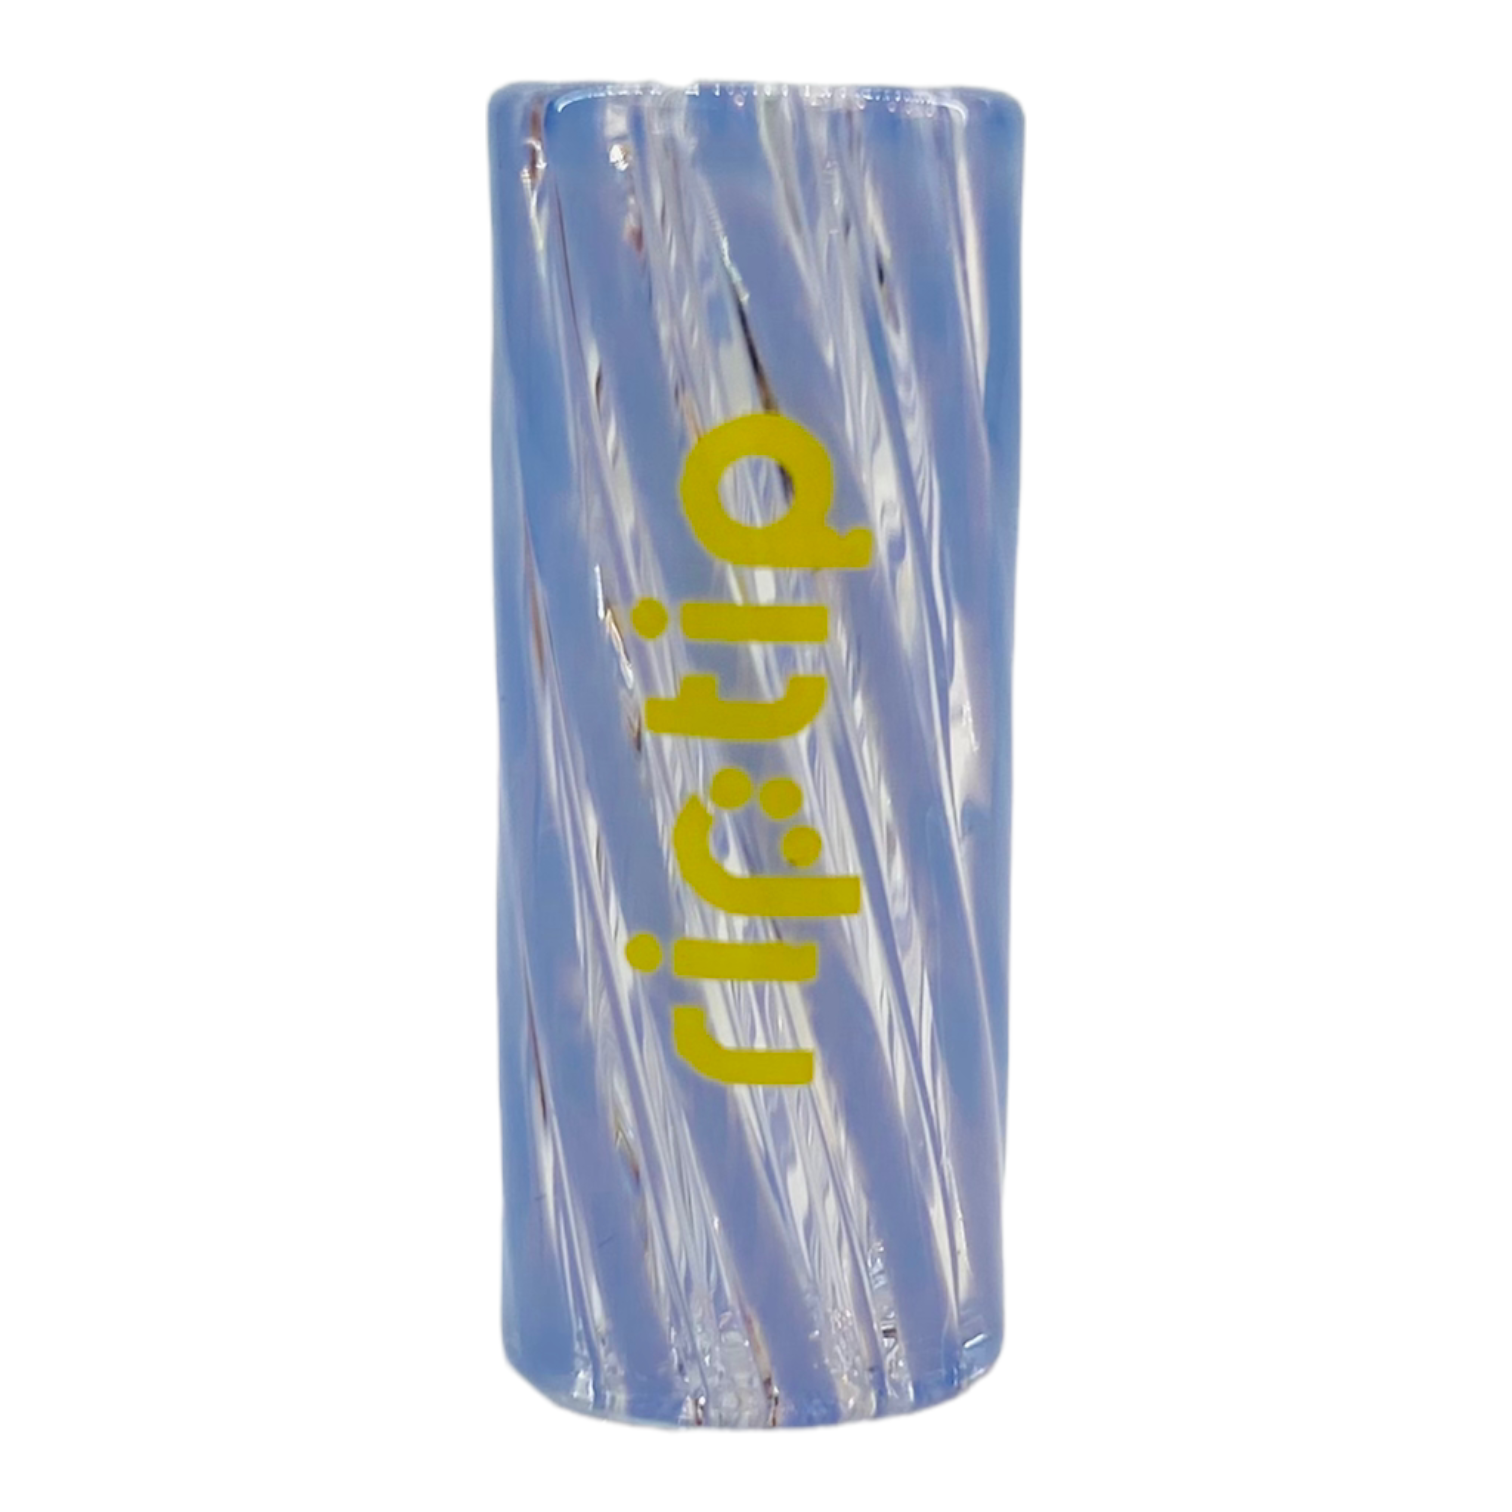 Gordo Scientific RipTip glass joint and blunt holder filter tip Mystique Blue 10mm Wide Regular Length